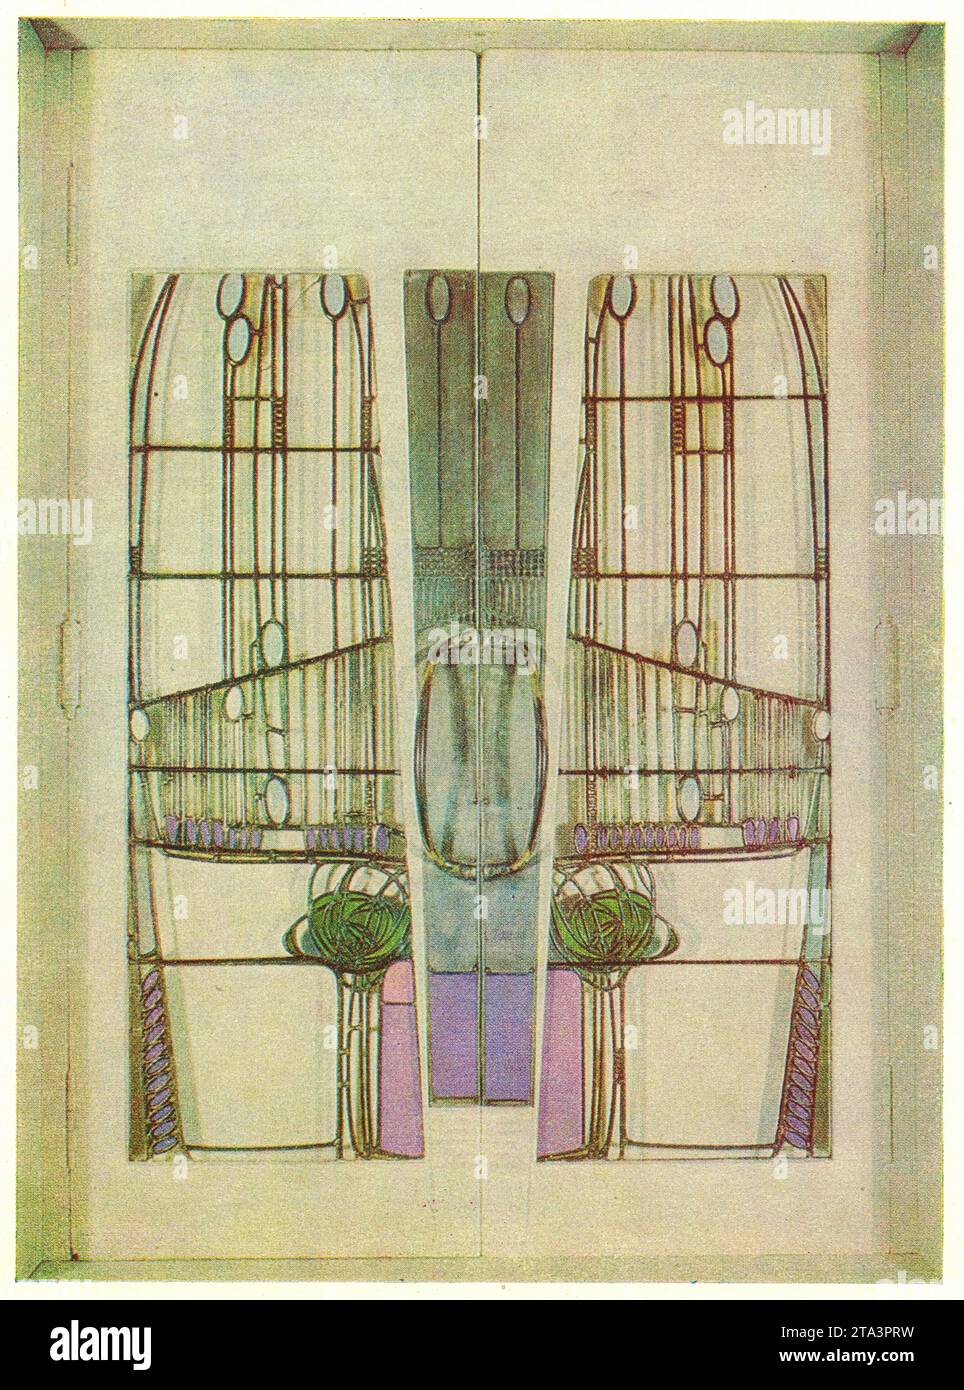 Charles Rennie Mackintosh, porta per 'Room de LUXE', 1904, Glasgow. Charles Rennie Mackintosh (7 giugno 1868 – 10 dicembre 1928) è stato un architetto, designer, acquicoltore e artista scozzese. Il suo approccio artistico aveva molto in comune con il simbolismo europeo. Il suo lavoro, insieme a quello di sua moglie Margaret Macdonald, fu influente sui movimenti del design europeo come l'Art Nouveau e il secessionismo e lodato da grandi modernisti come Josef Hoffmann. Mackintosh è nato a Glasgow e morì a Londra. È tra le figure più importanti dello stile moderno (stile Art Nouveau britannico). Foto Stock